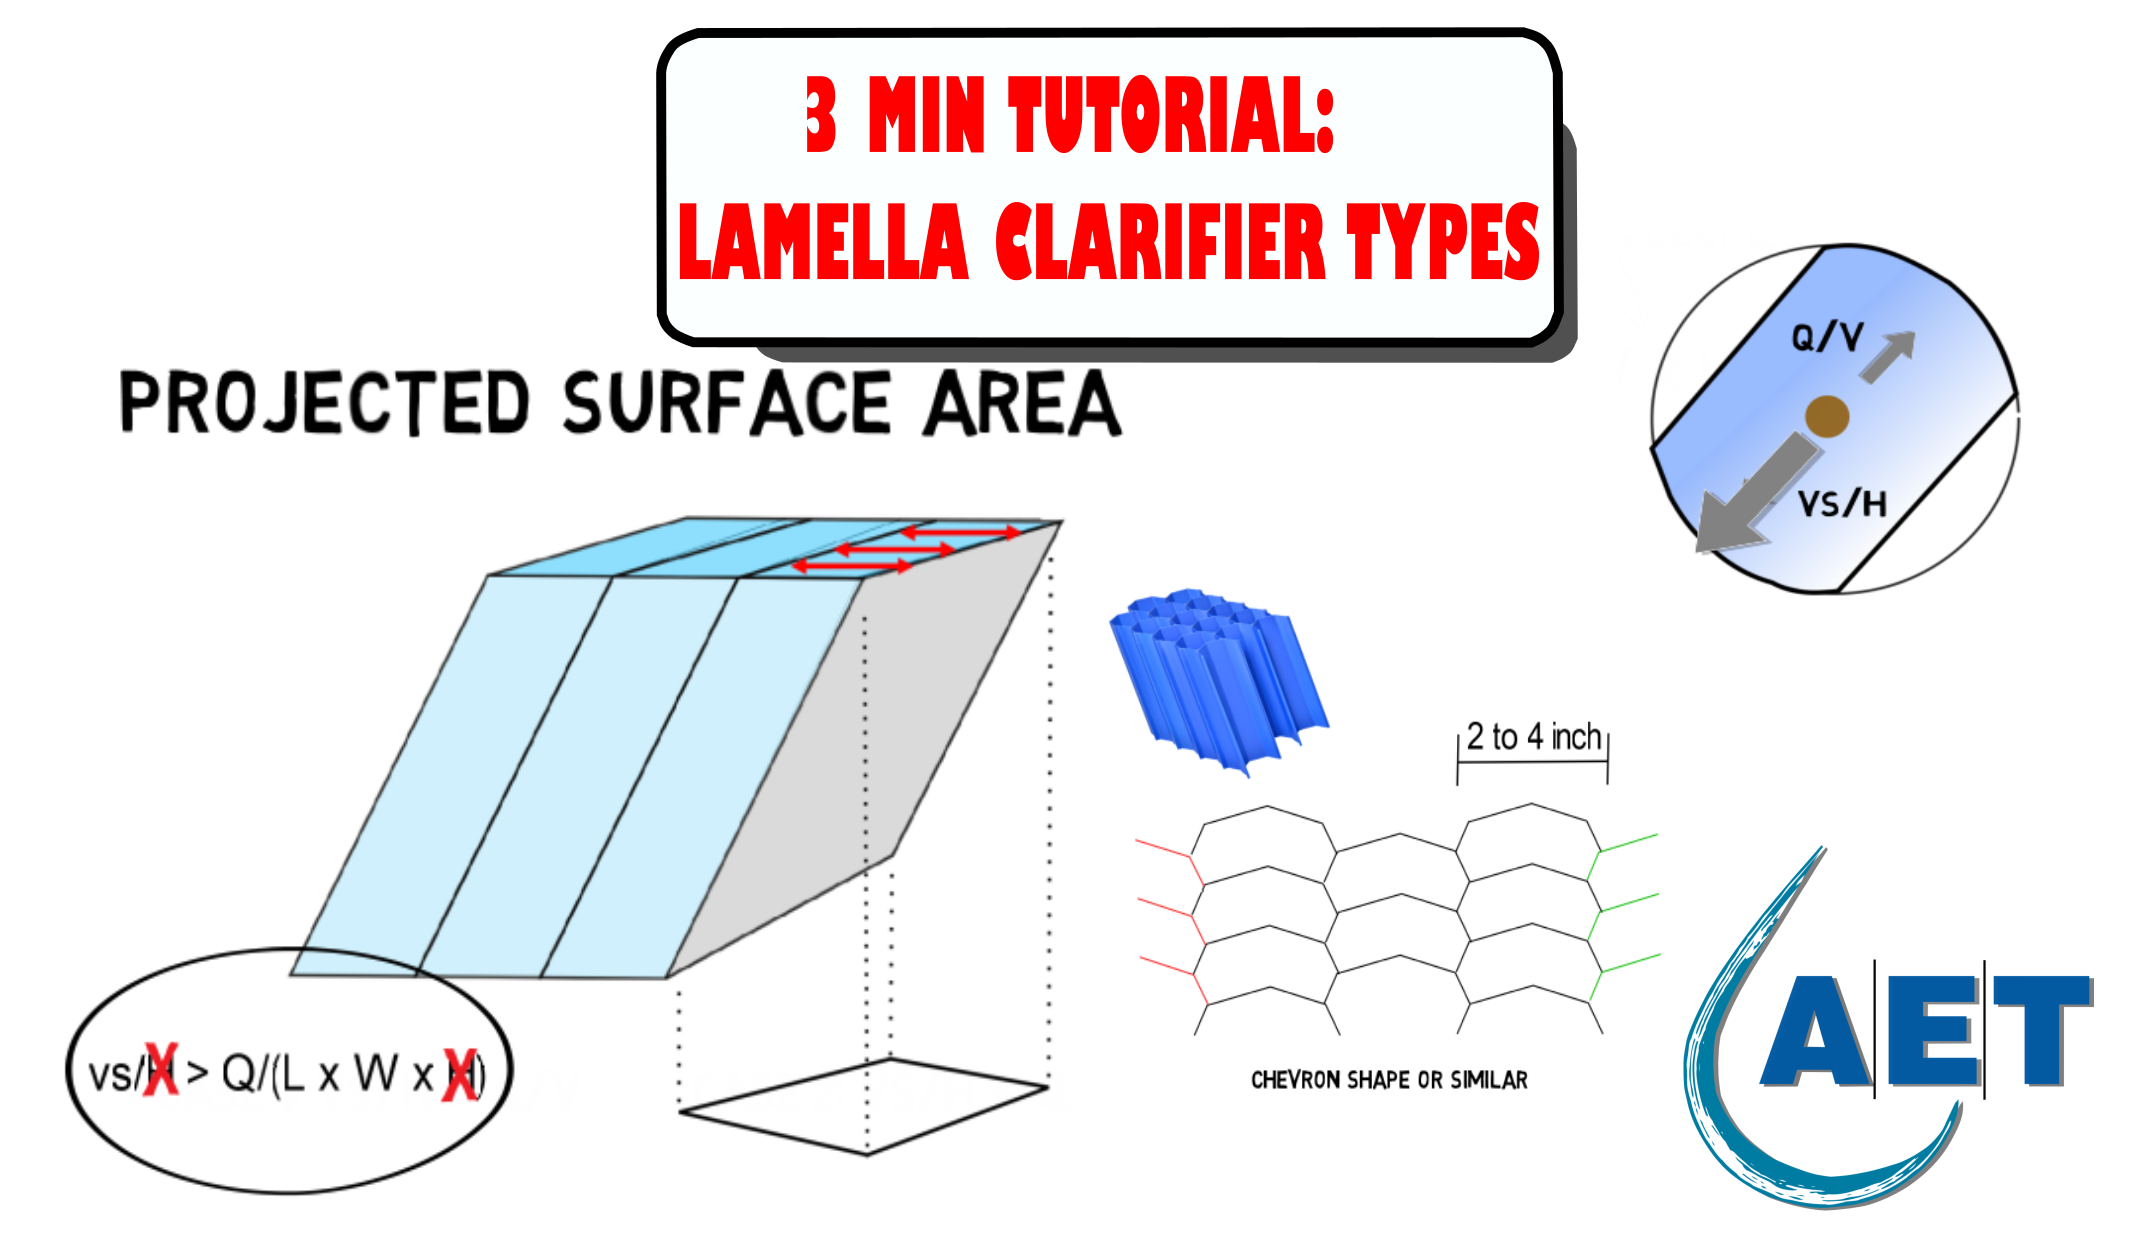 Lamella clarifier types - Advantages of different channel designs